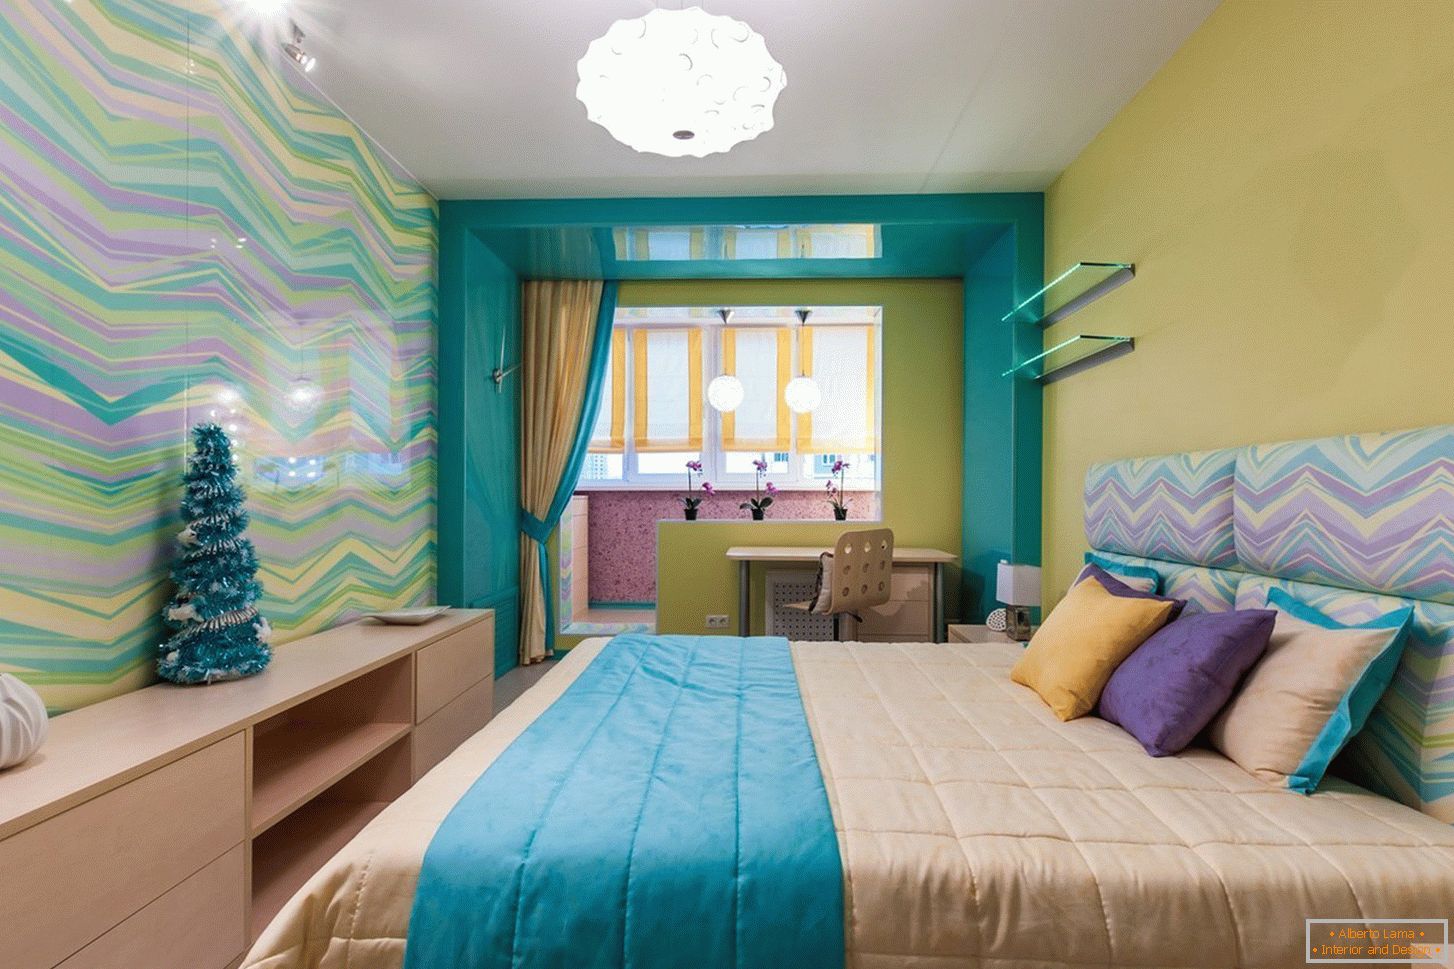 Diseño de dormitorio brillante